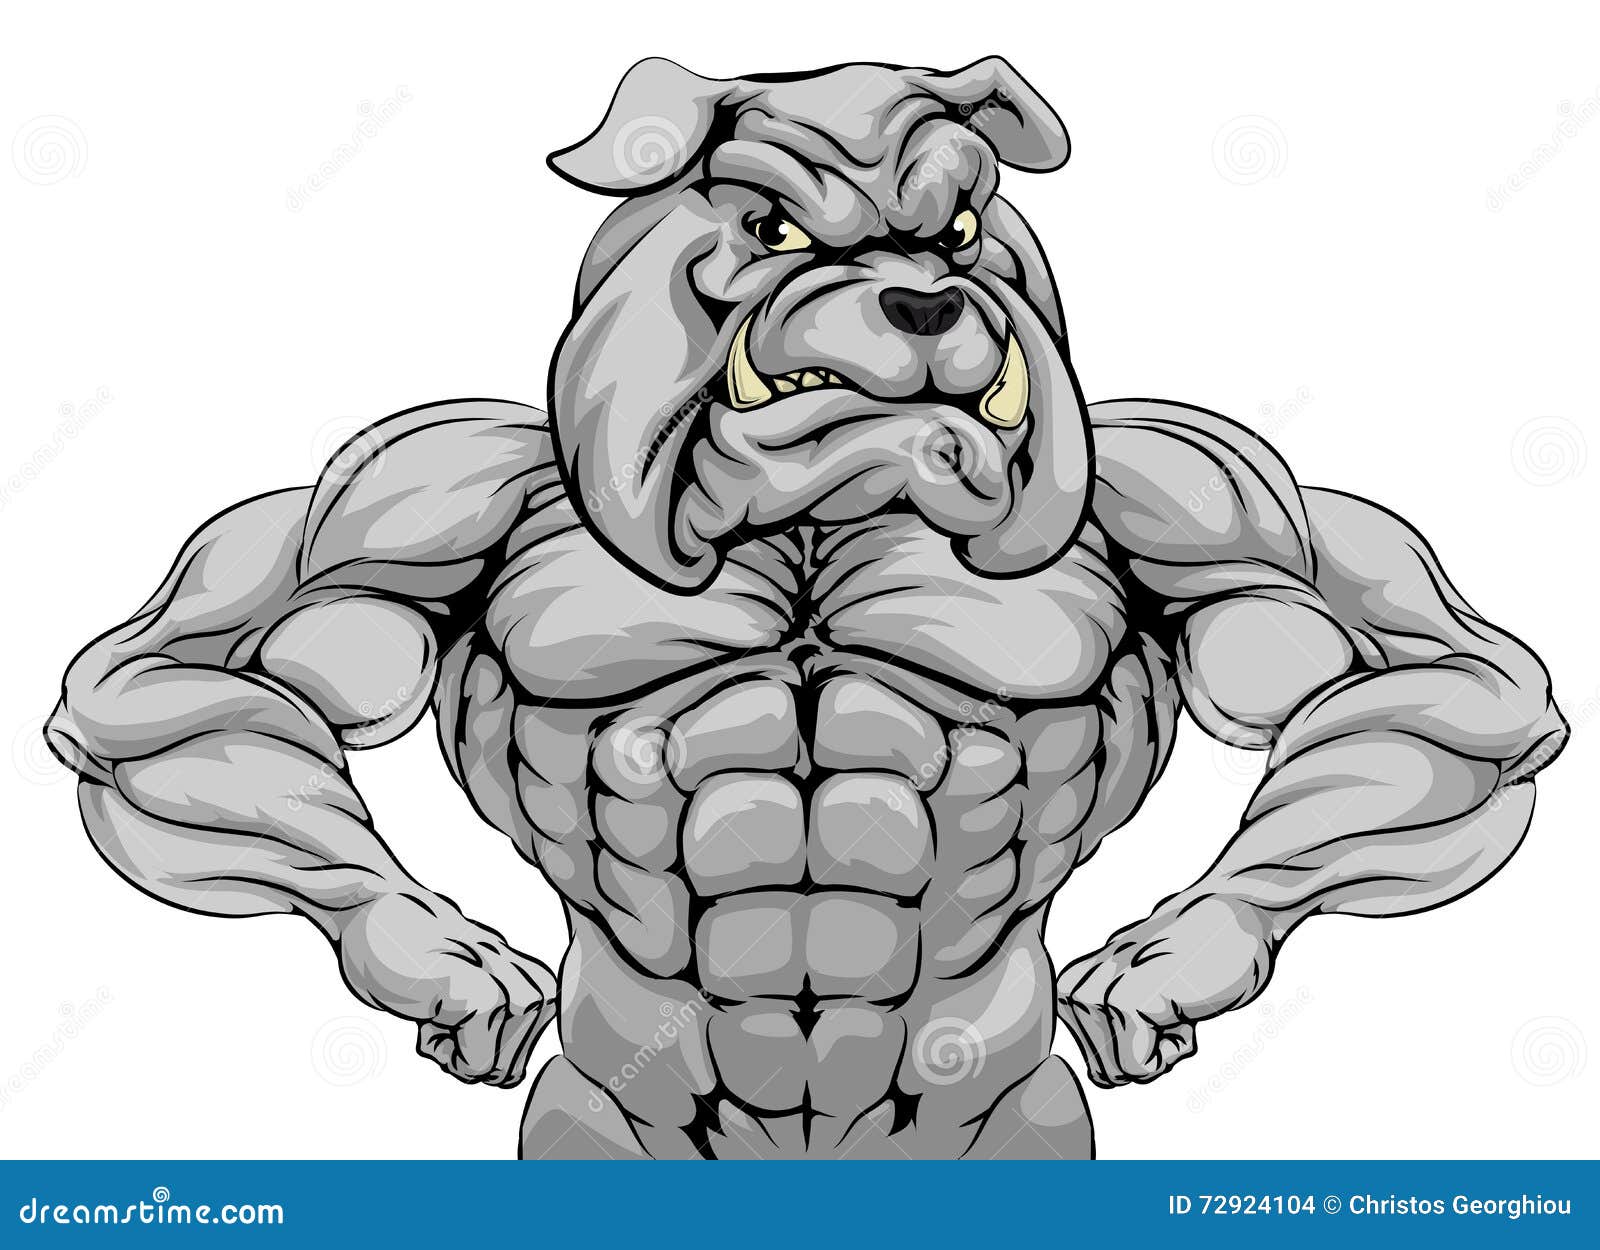 Bulldog Muscle Stock Illustrations – 544 Bulldog Muscle Stock  Illustrations, Vectors & Clipart - Dreamstime